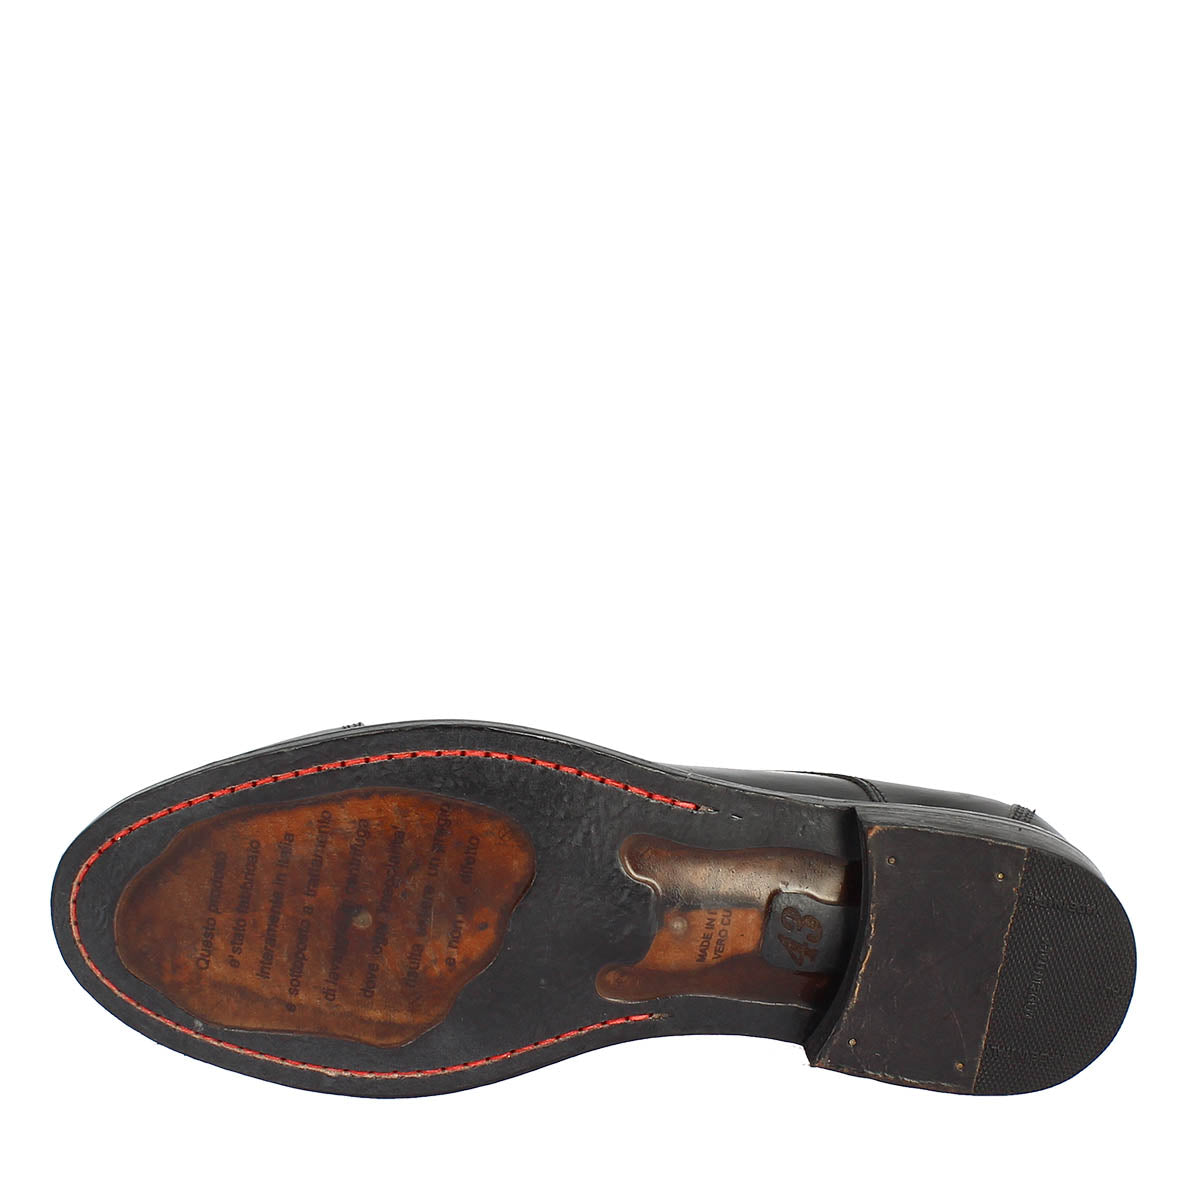 Chaussures à lacets formelles faites à la main pour hommes en cuir noir